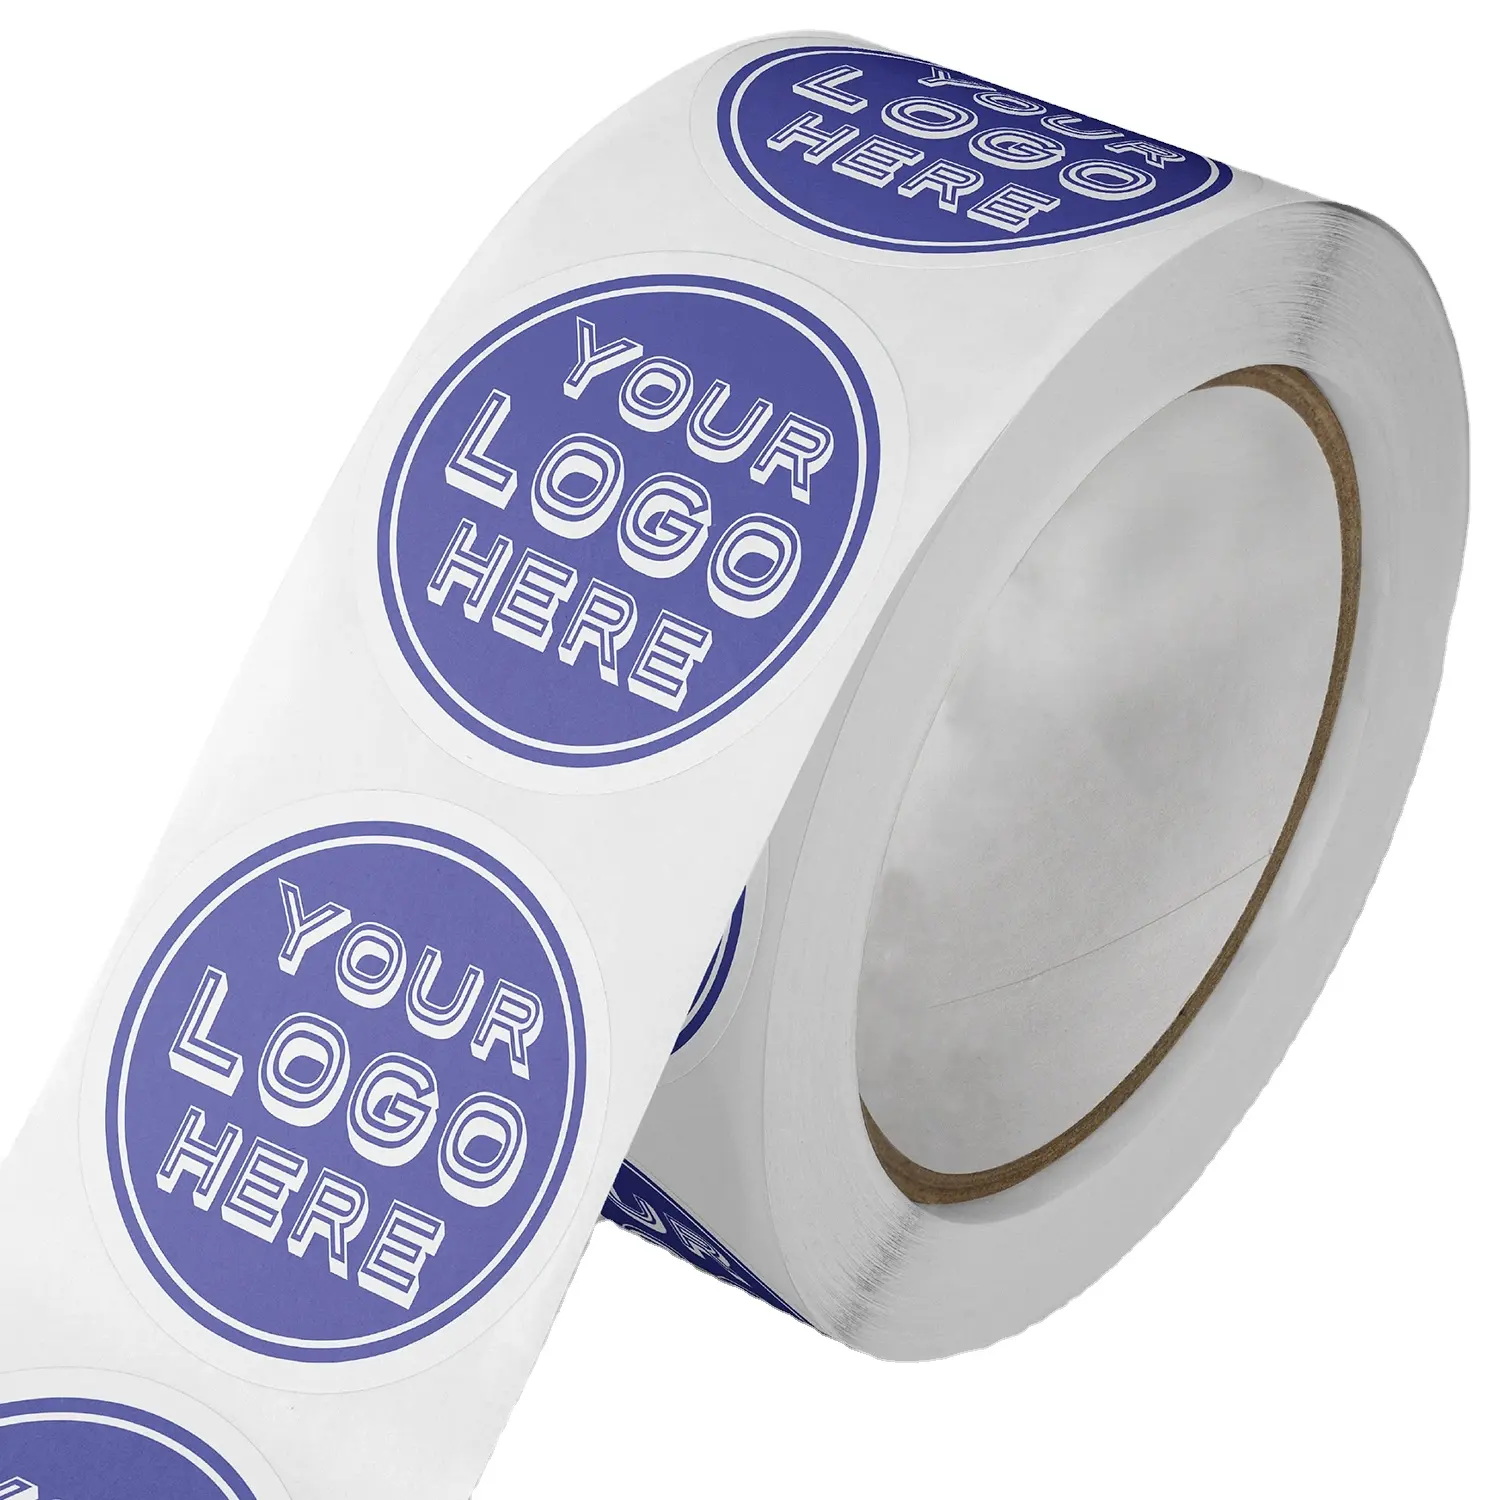 Kunden spezifische Vinyl kleber runde Marke Logo Aufkleber, Kreis Produkt verpackung Etikett Aufkleber mit Ihrem eigenen Logo benutzer definierte Druck